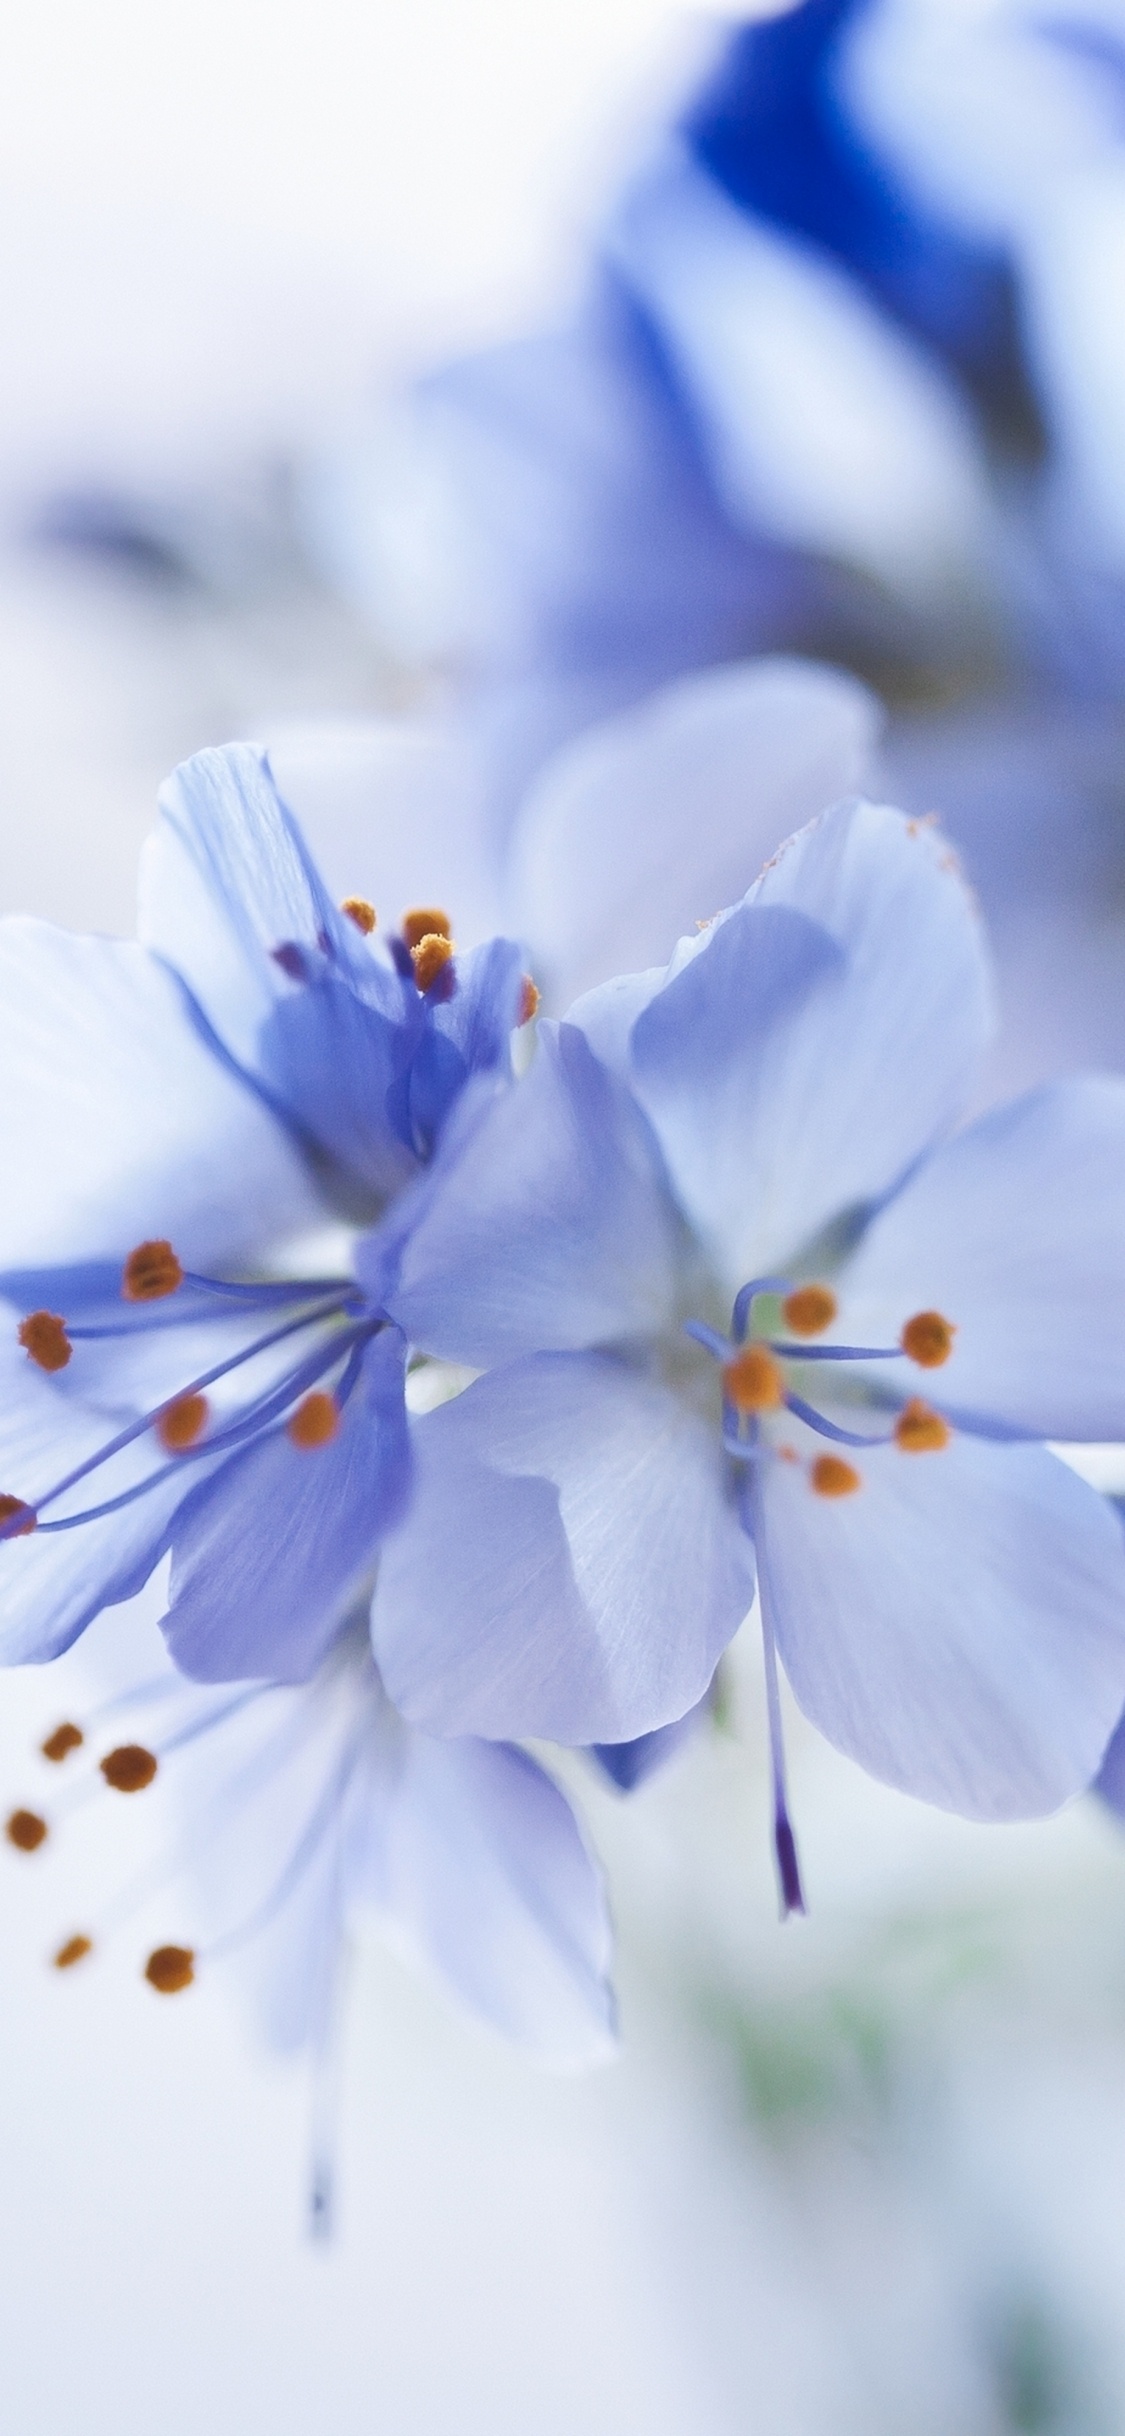 White and Blue Flowers in Tilt Shift Lens. Wallpaper in 1125x2436 Resolution